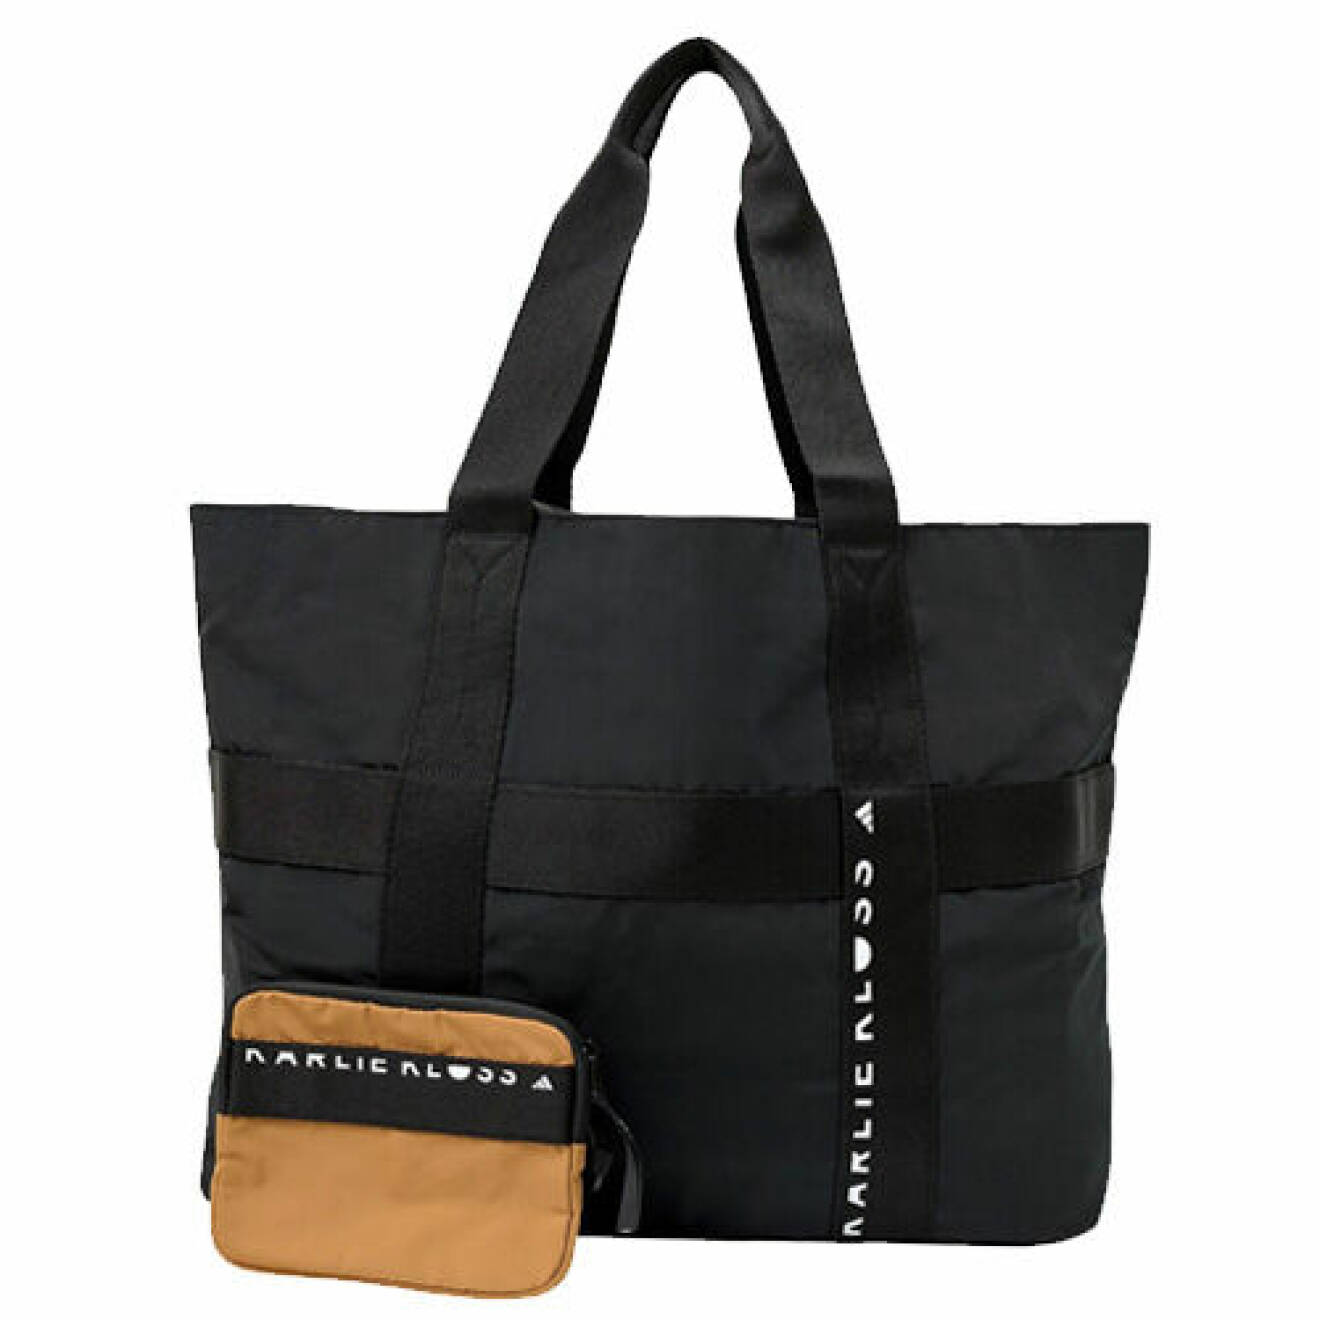 träningsväska dam - svart väska med liten tillhörande väska från Adidas x Karlie Kloss